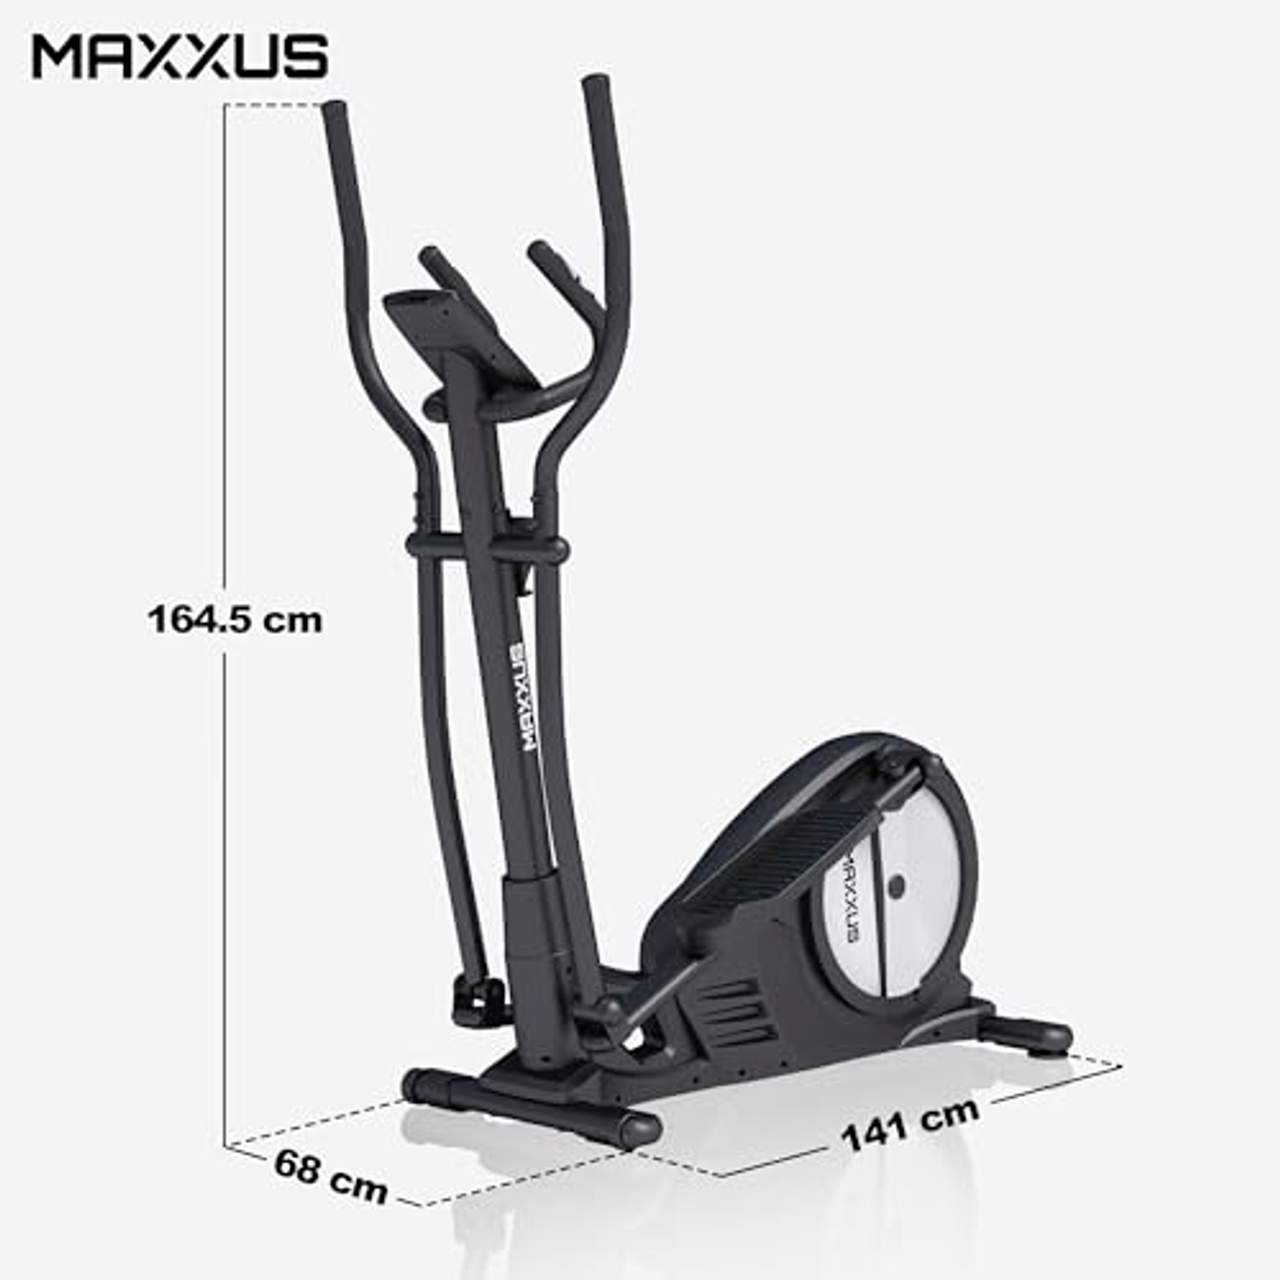 Maxxus Crosstrainer CX